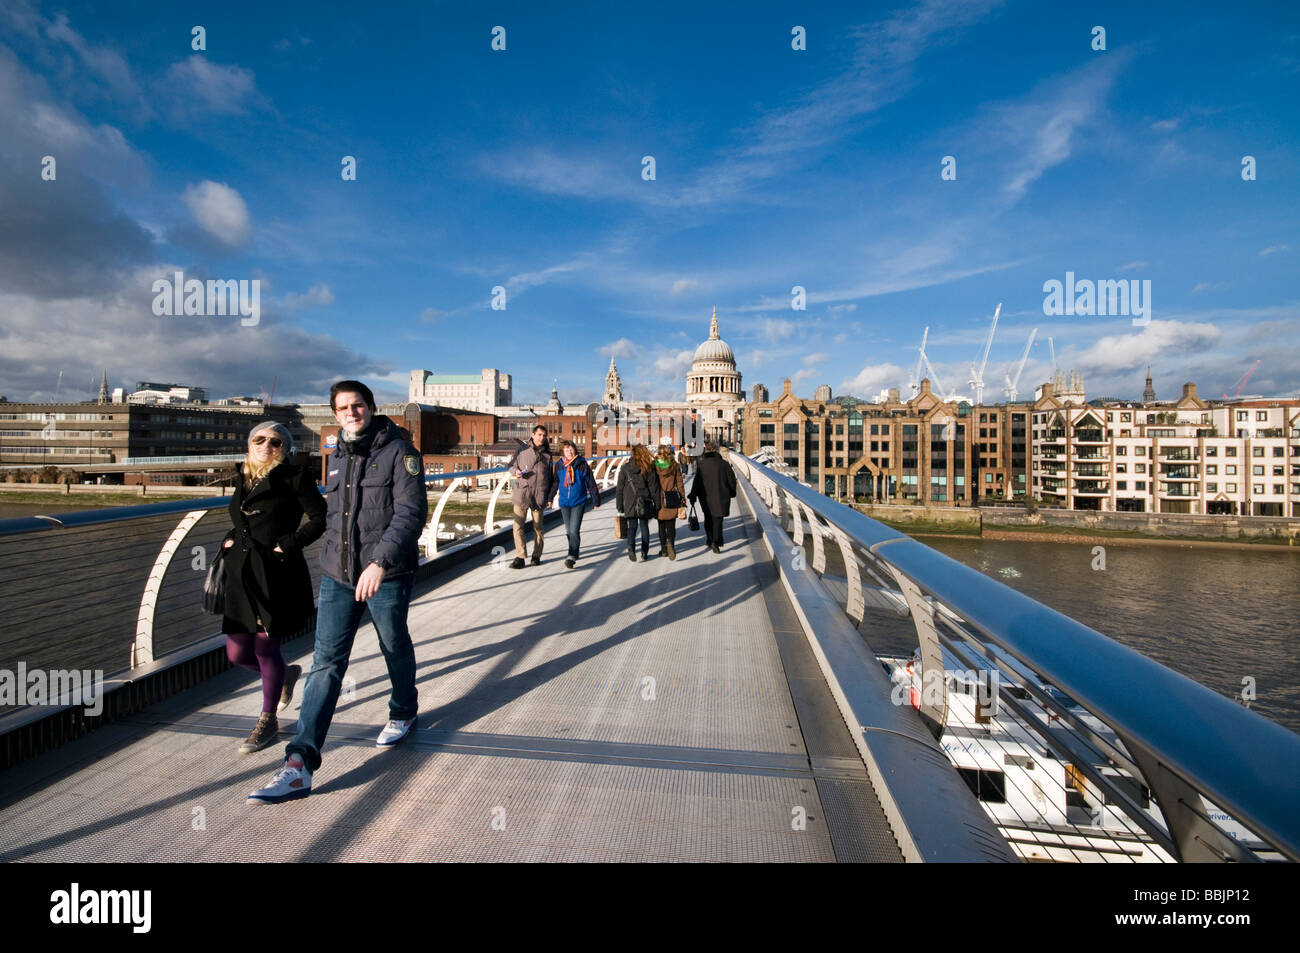 Les piétons et les touristes sur le Millennium Bridge, London, UK Banque D'Images